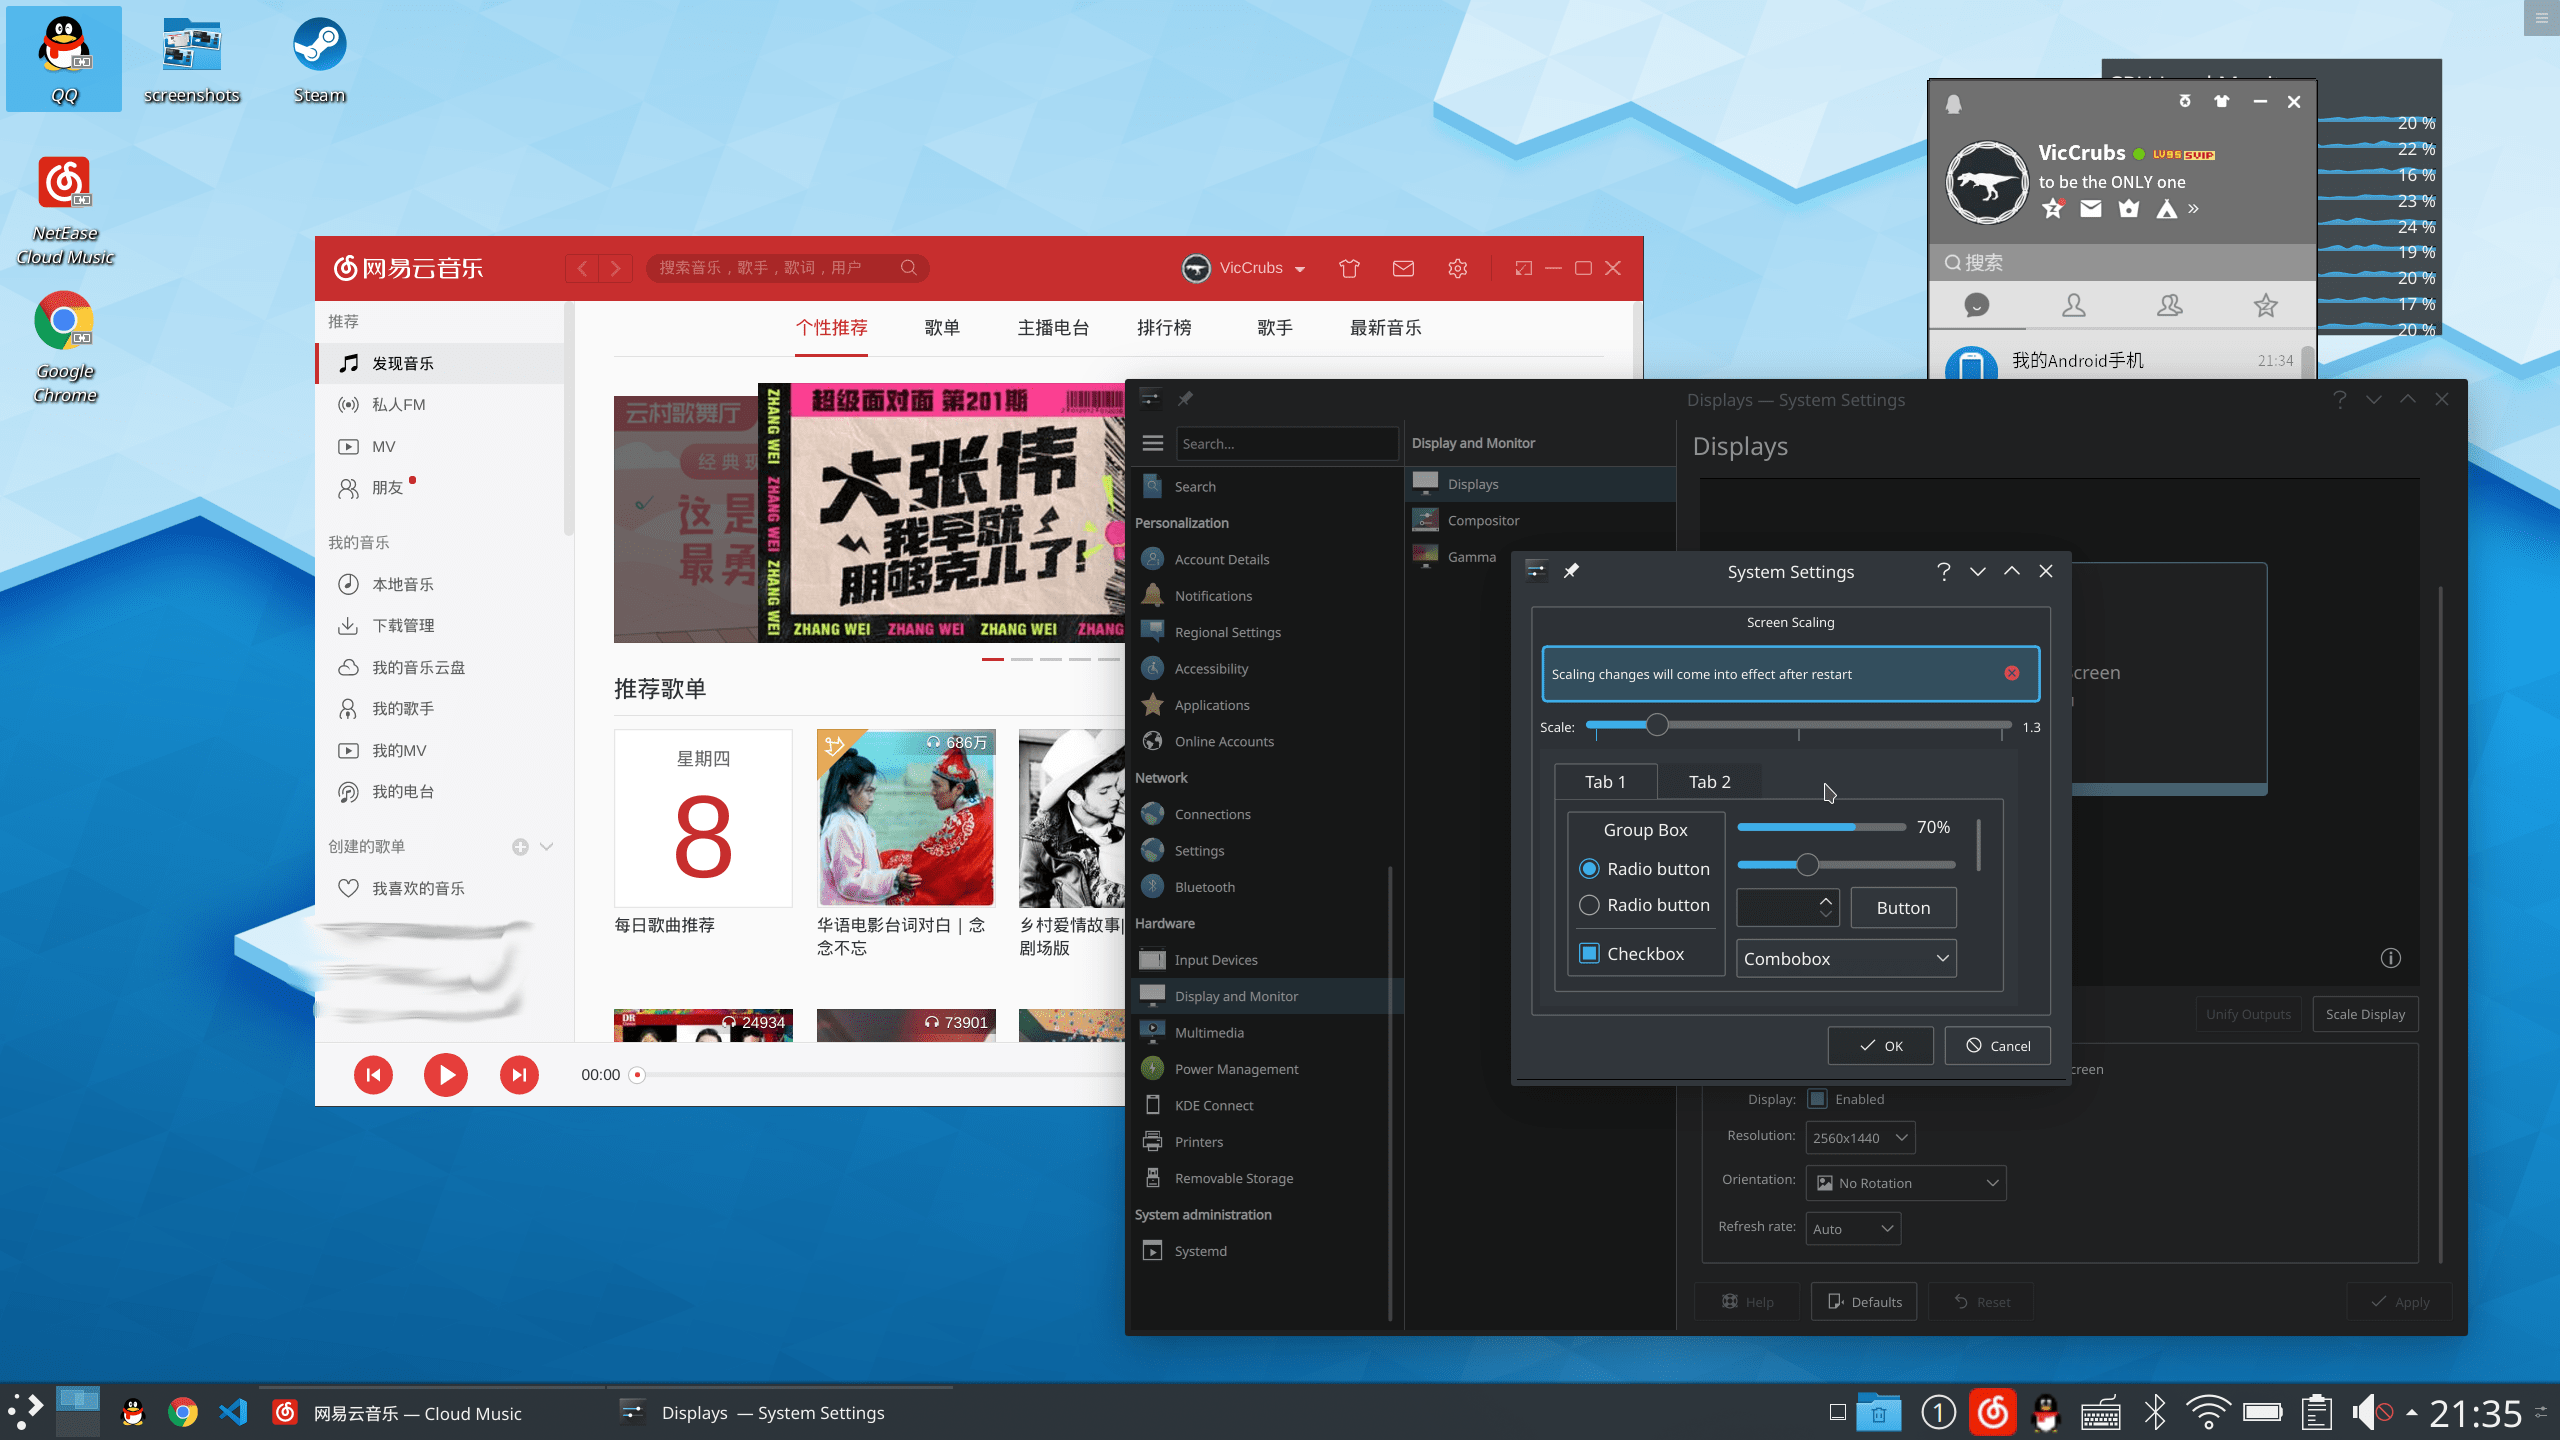 上面出现过的KDE桌面，各个窗口之间有重叠